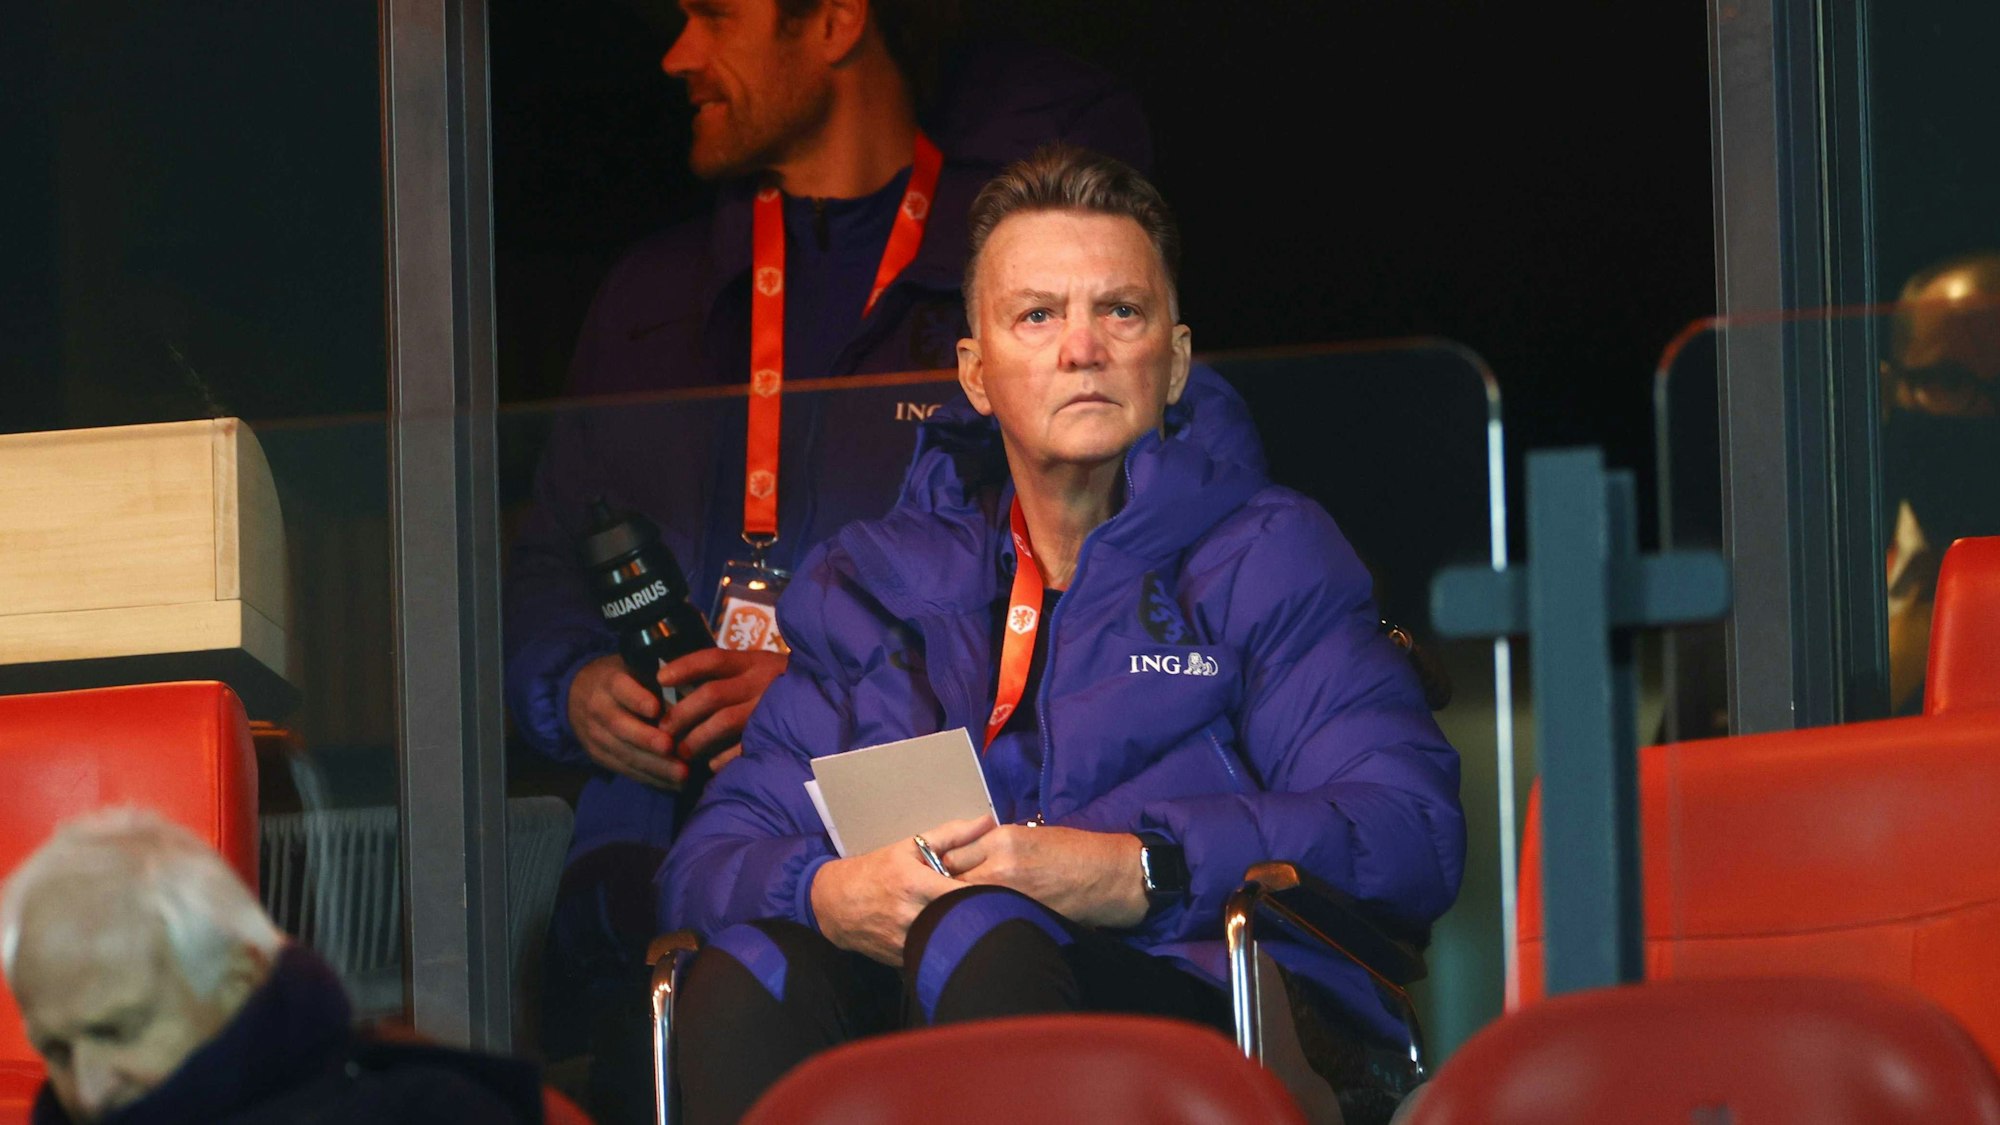 Der niederländische Trainer Louis van Gaal sitzt während des Spiels in einem Rollstuhl auf der Tribüne.